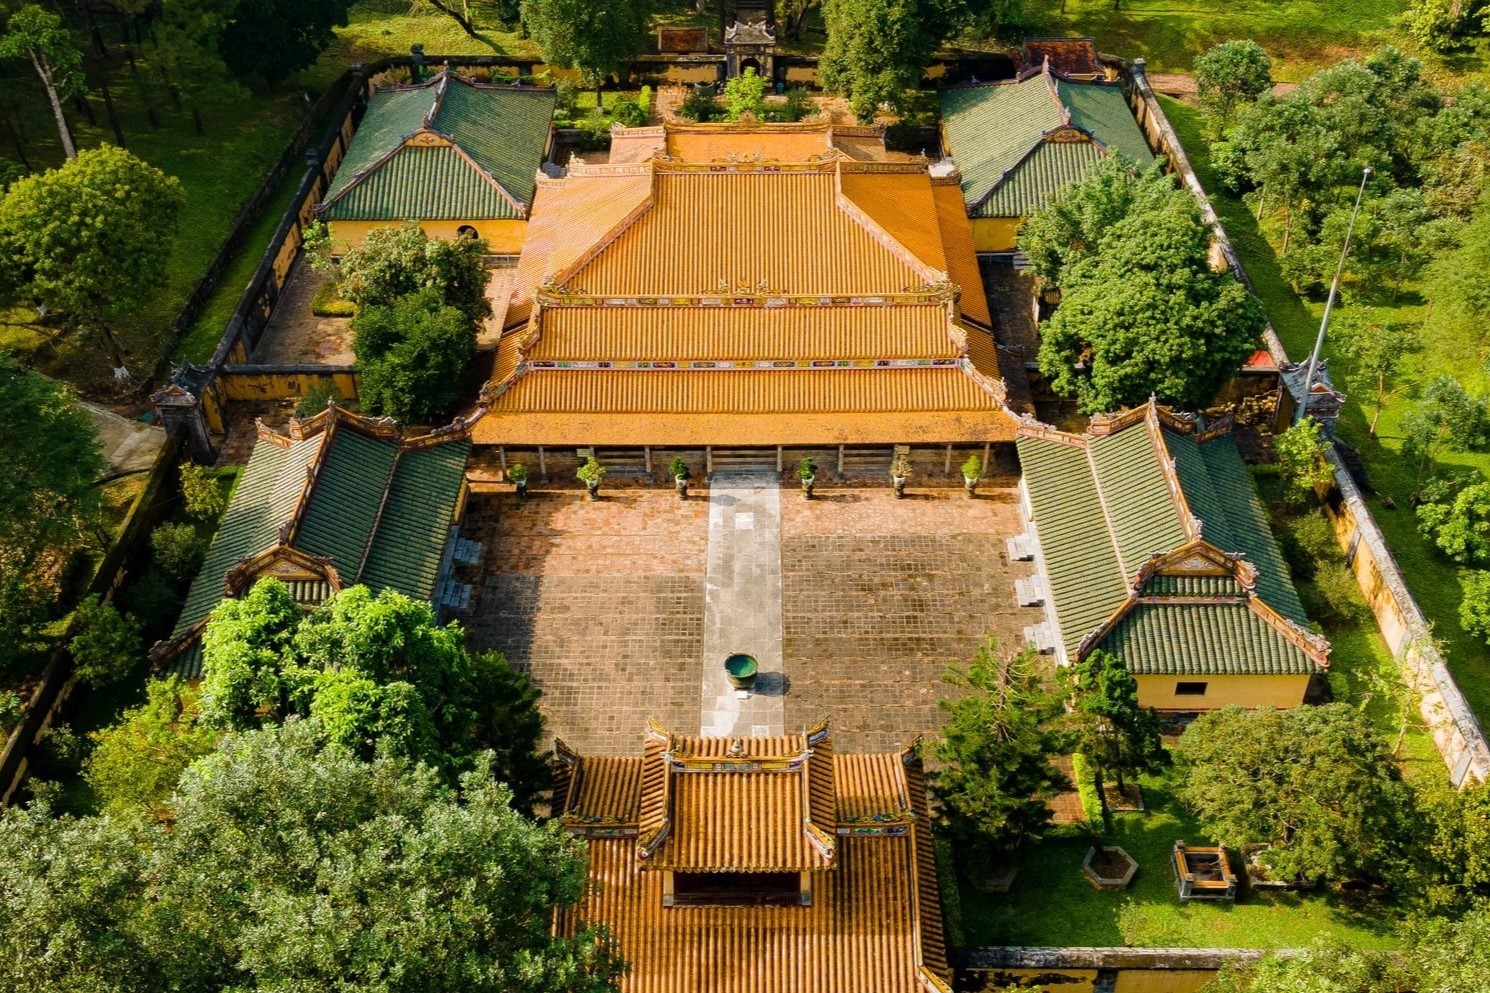 Hue Royal Tombs - Vietnam Vacation Travel